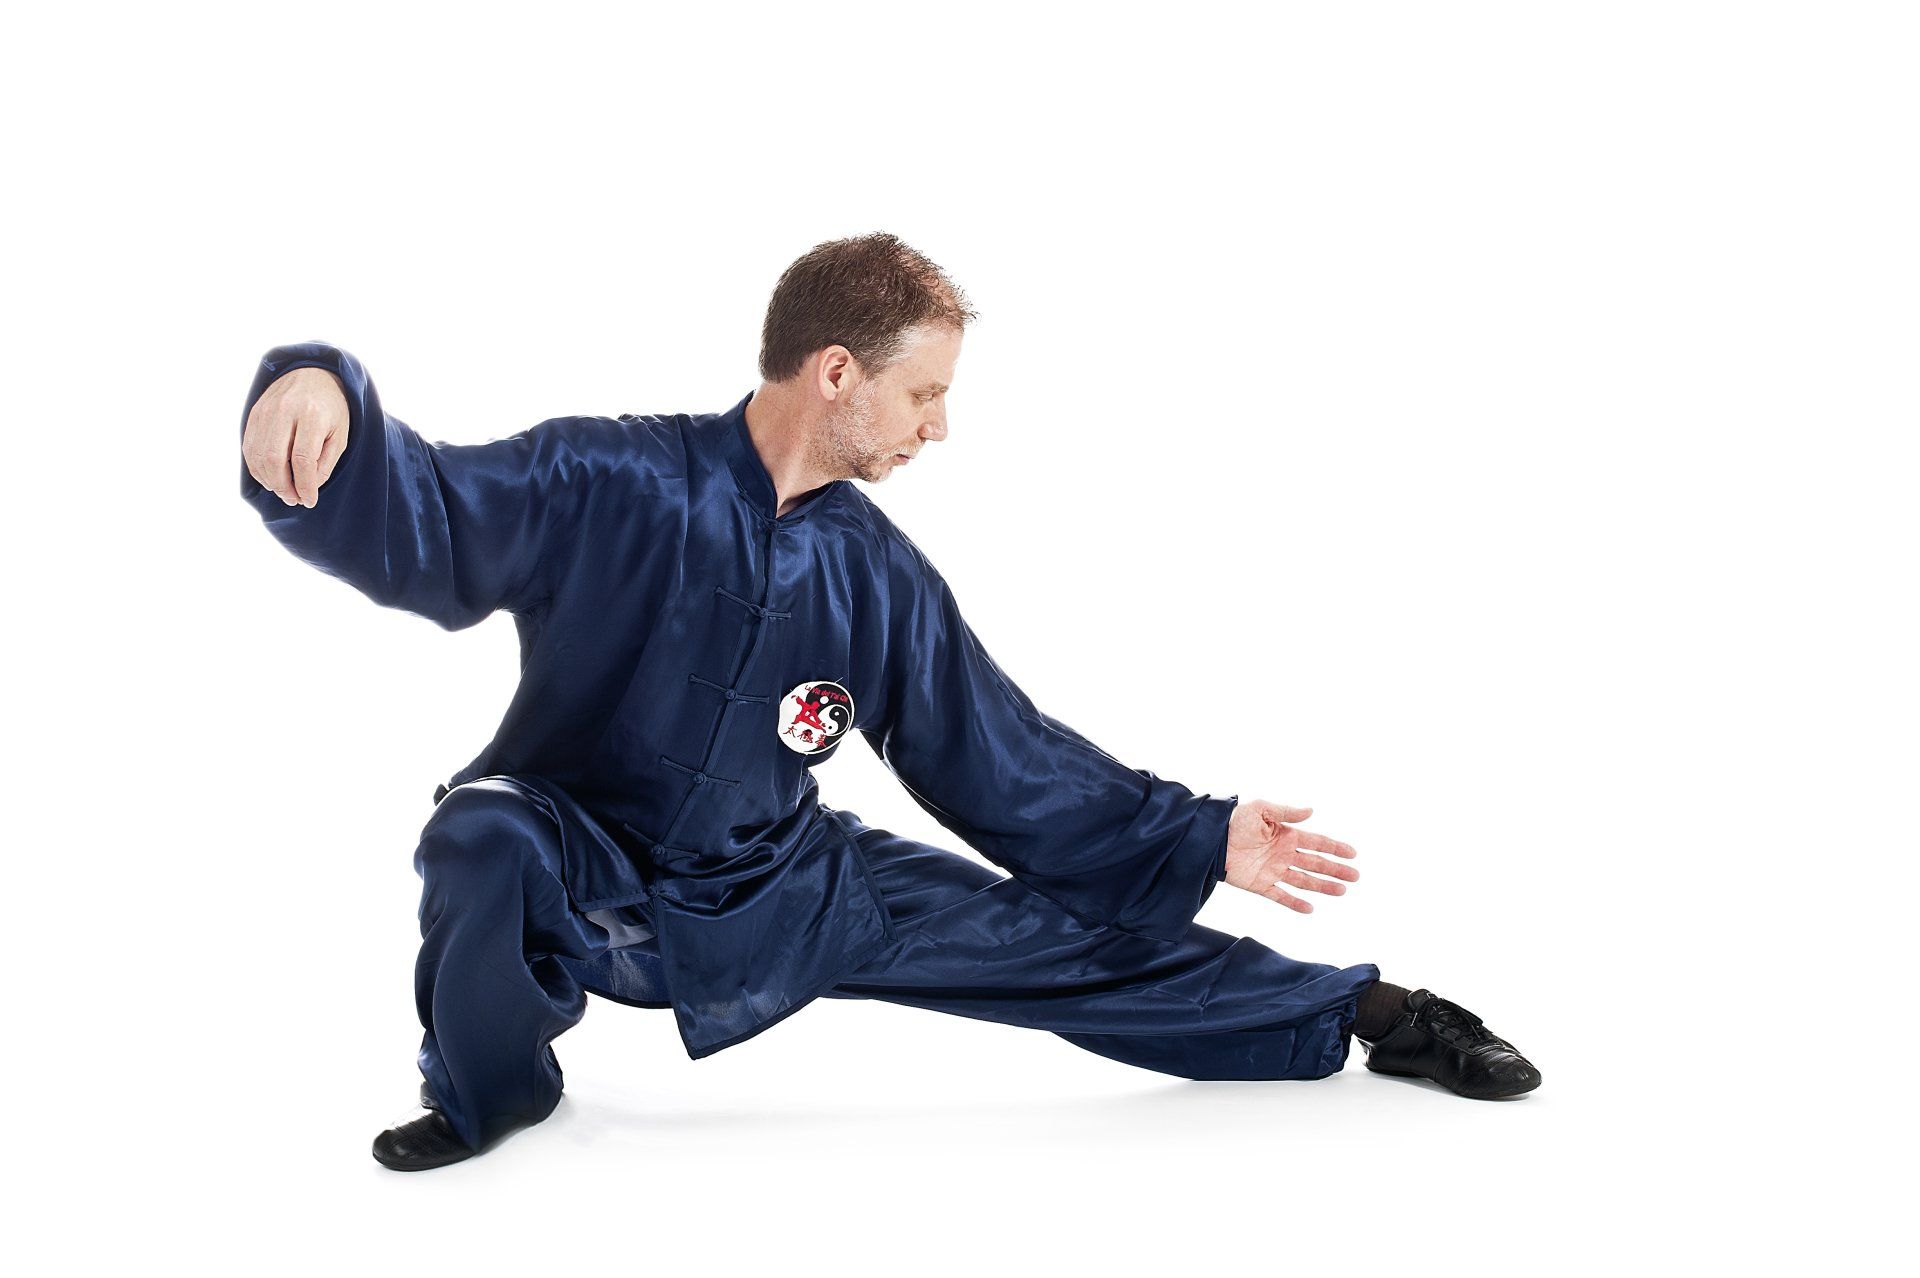 Un uomo vestito di blu pratica arti marziali su sfondo bianco.